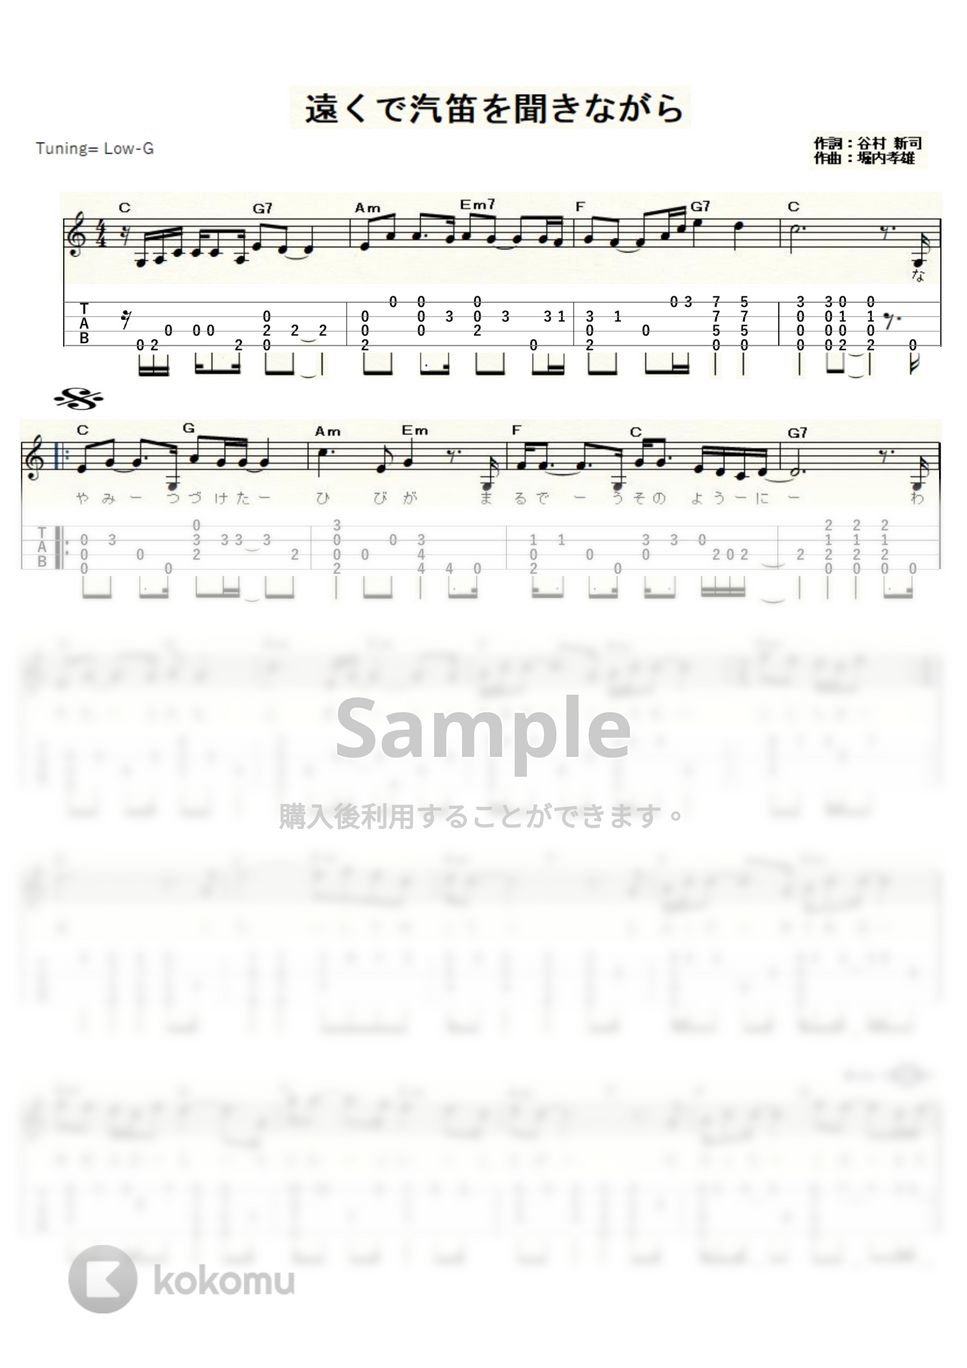 アリス - 遠くで汽笛を聞きながら (ｳｸﾚﾚｿﾛ / Low-G / 中級) by ukulelepapa